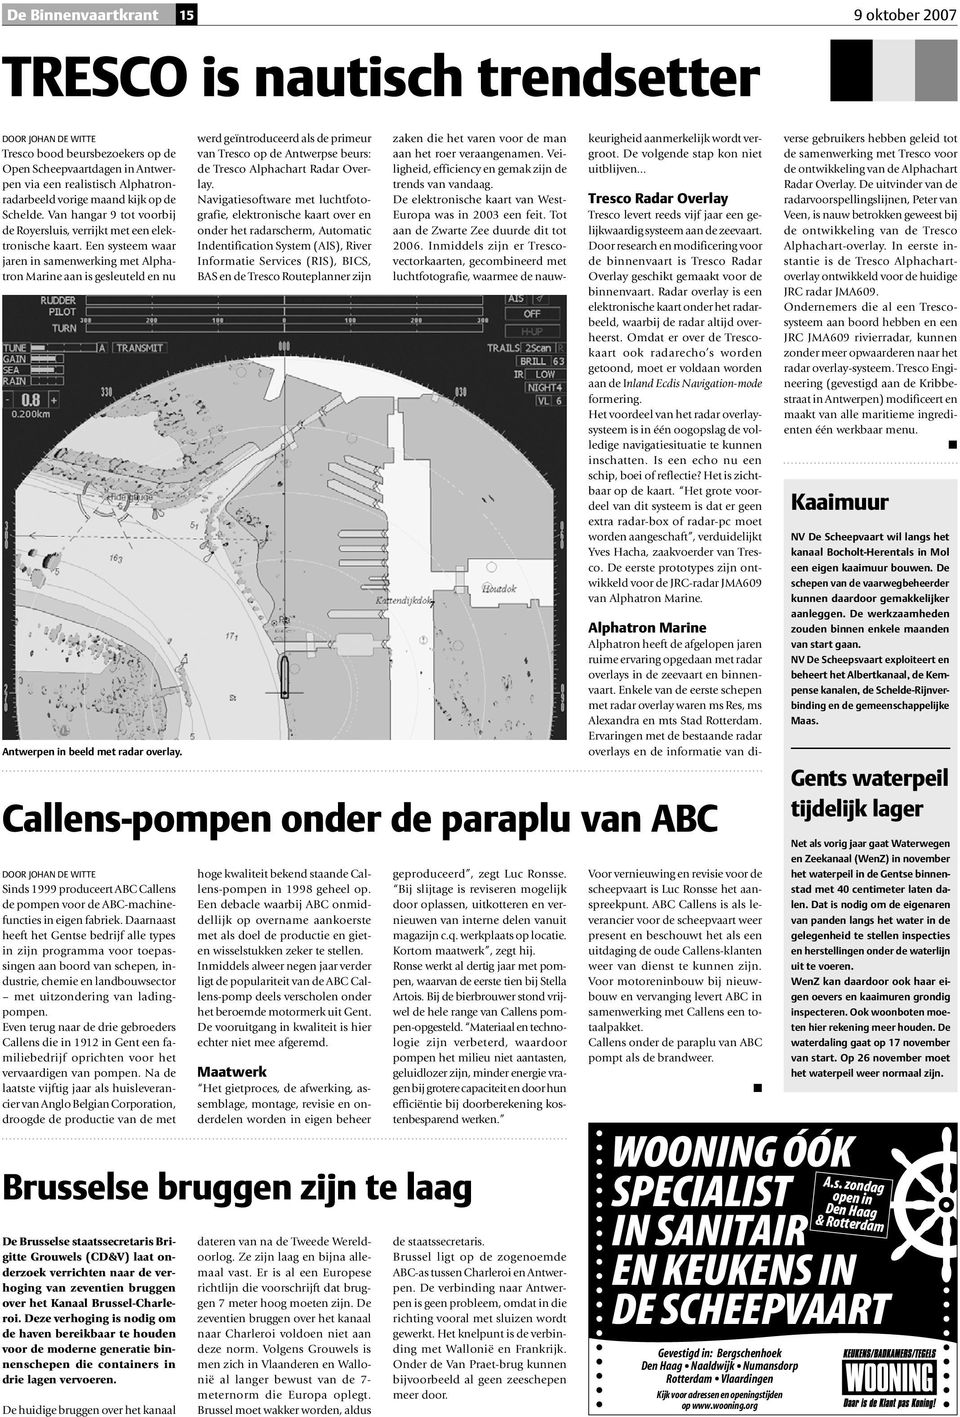 Een systeem waar jaren in samenwerking met Alphatron Marine aan is gesleuteld en nu Antwerpen in beeld met radar overlay.